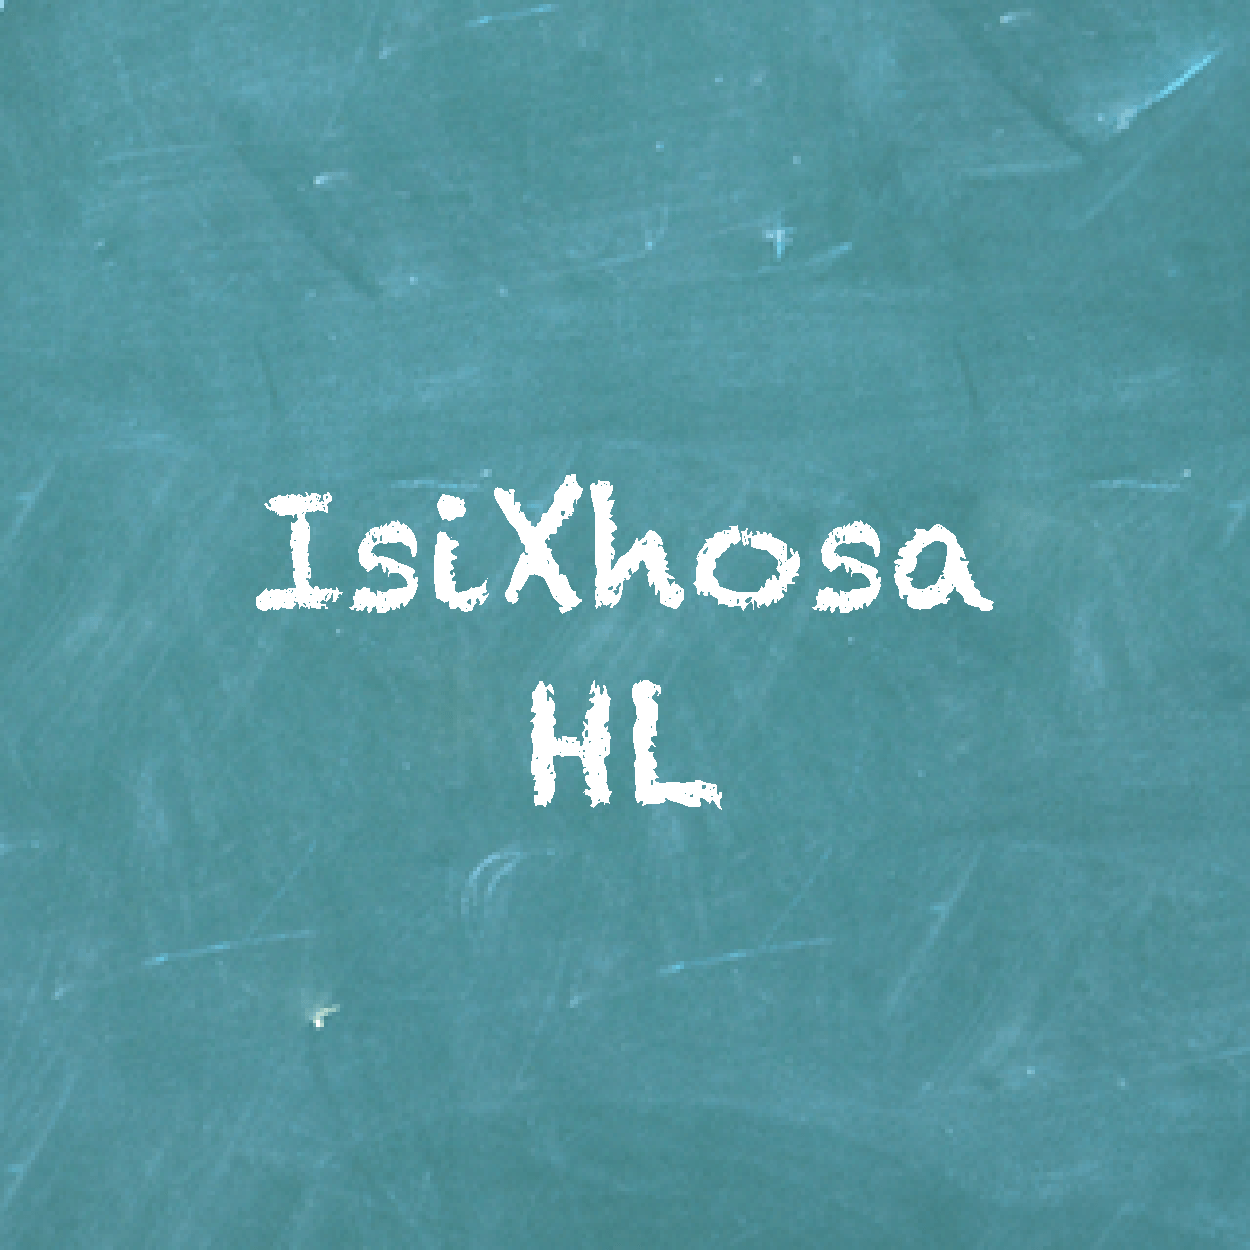 Xhosa Past exam paper